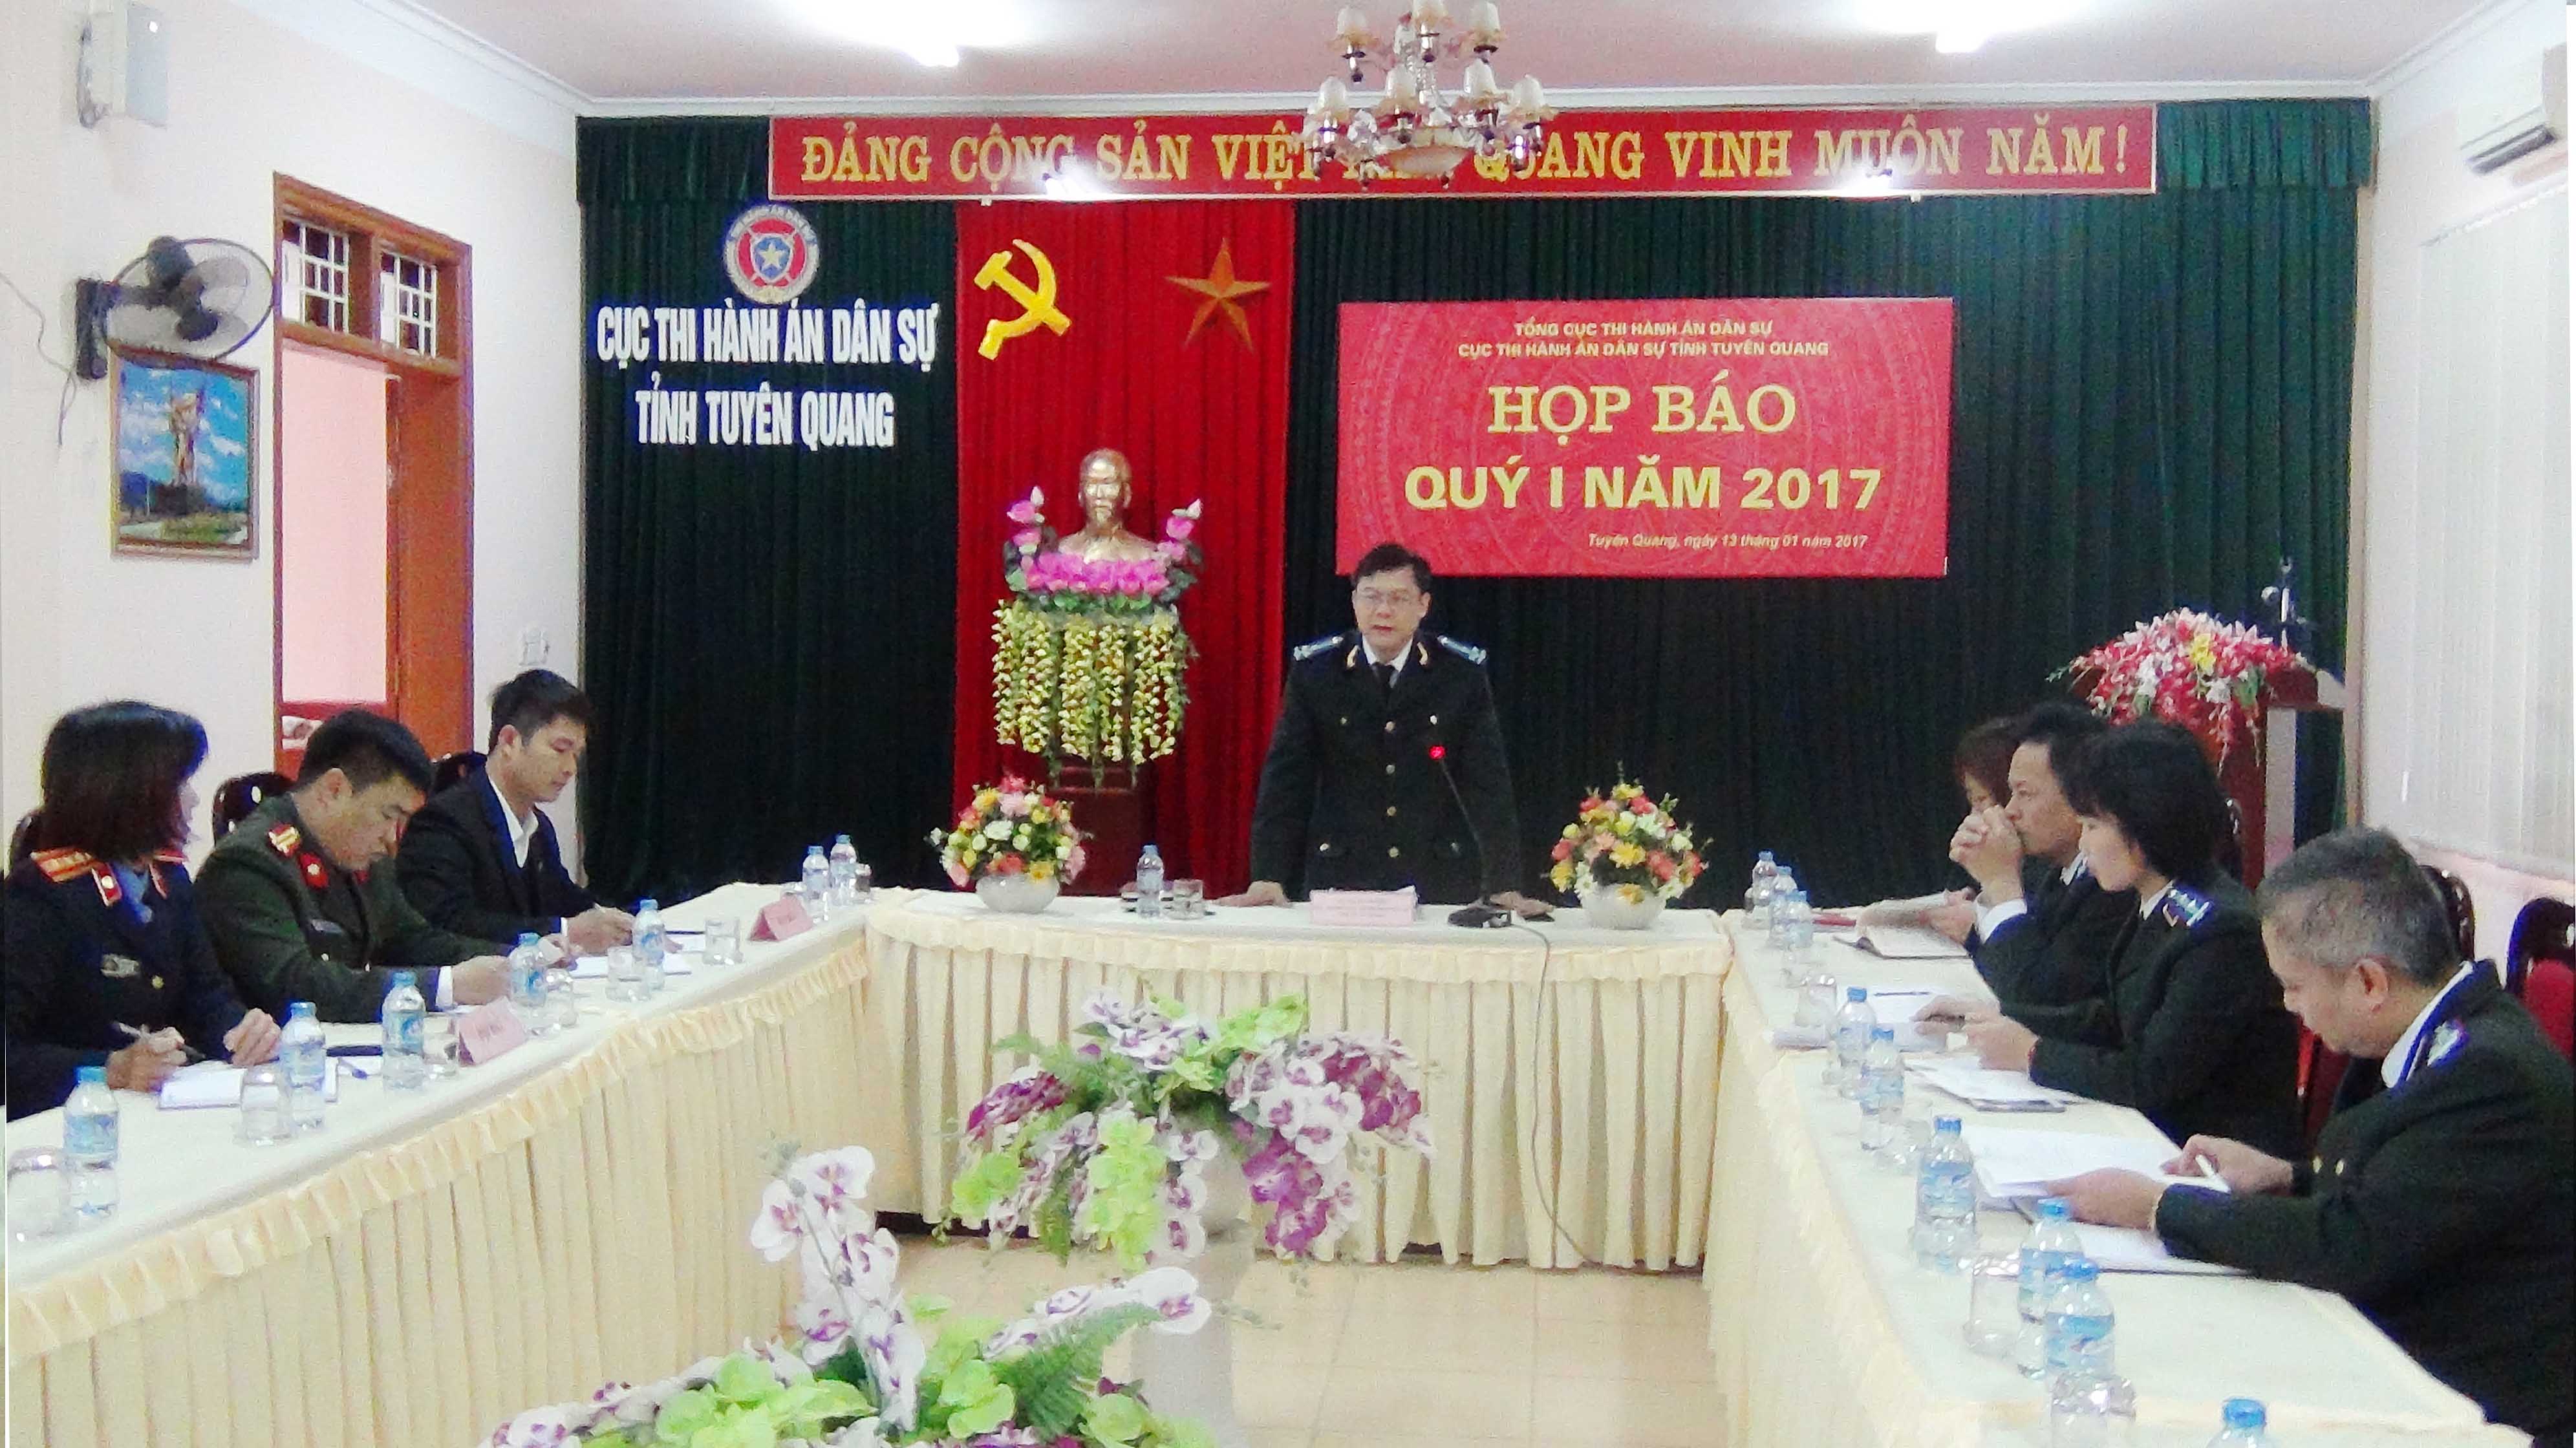 Cục Thi hành án dân sự tỉnh Tuyên Quang tổ chức họp báo quý I năm 2017